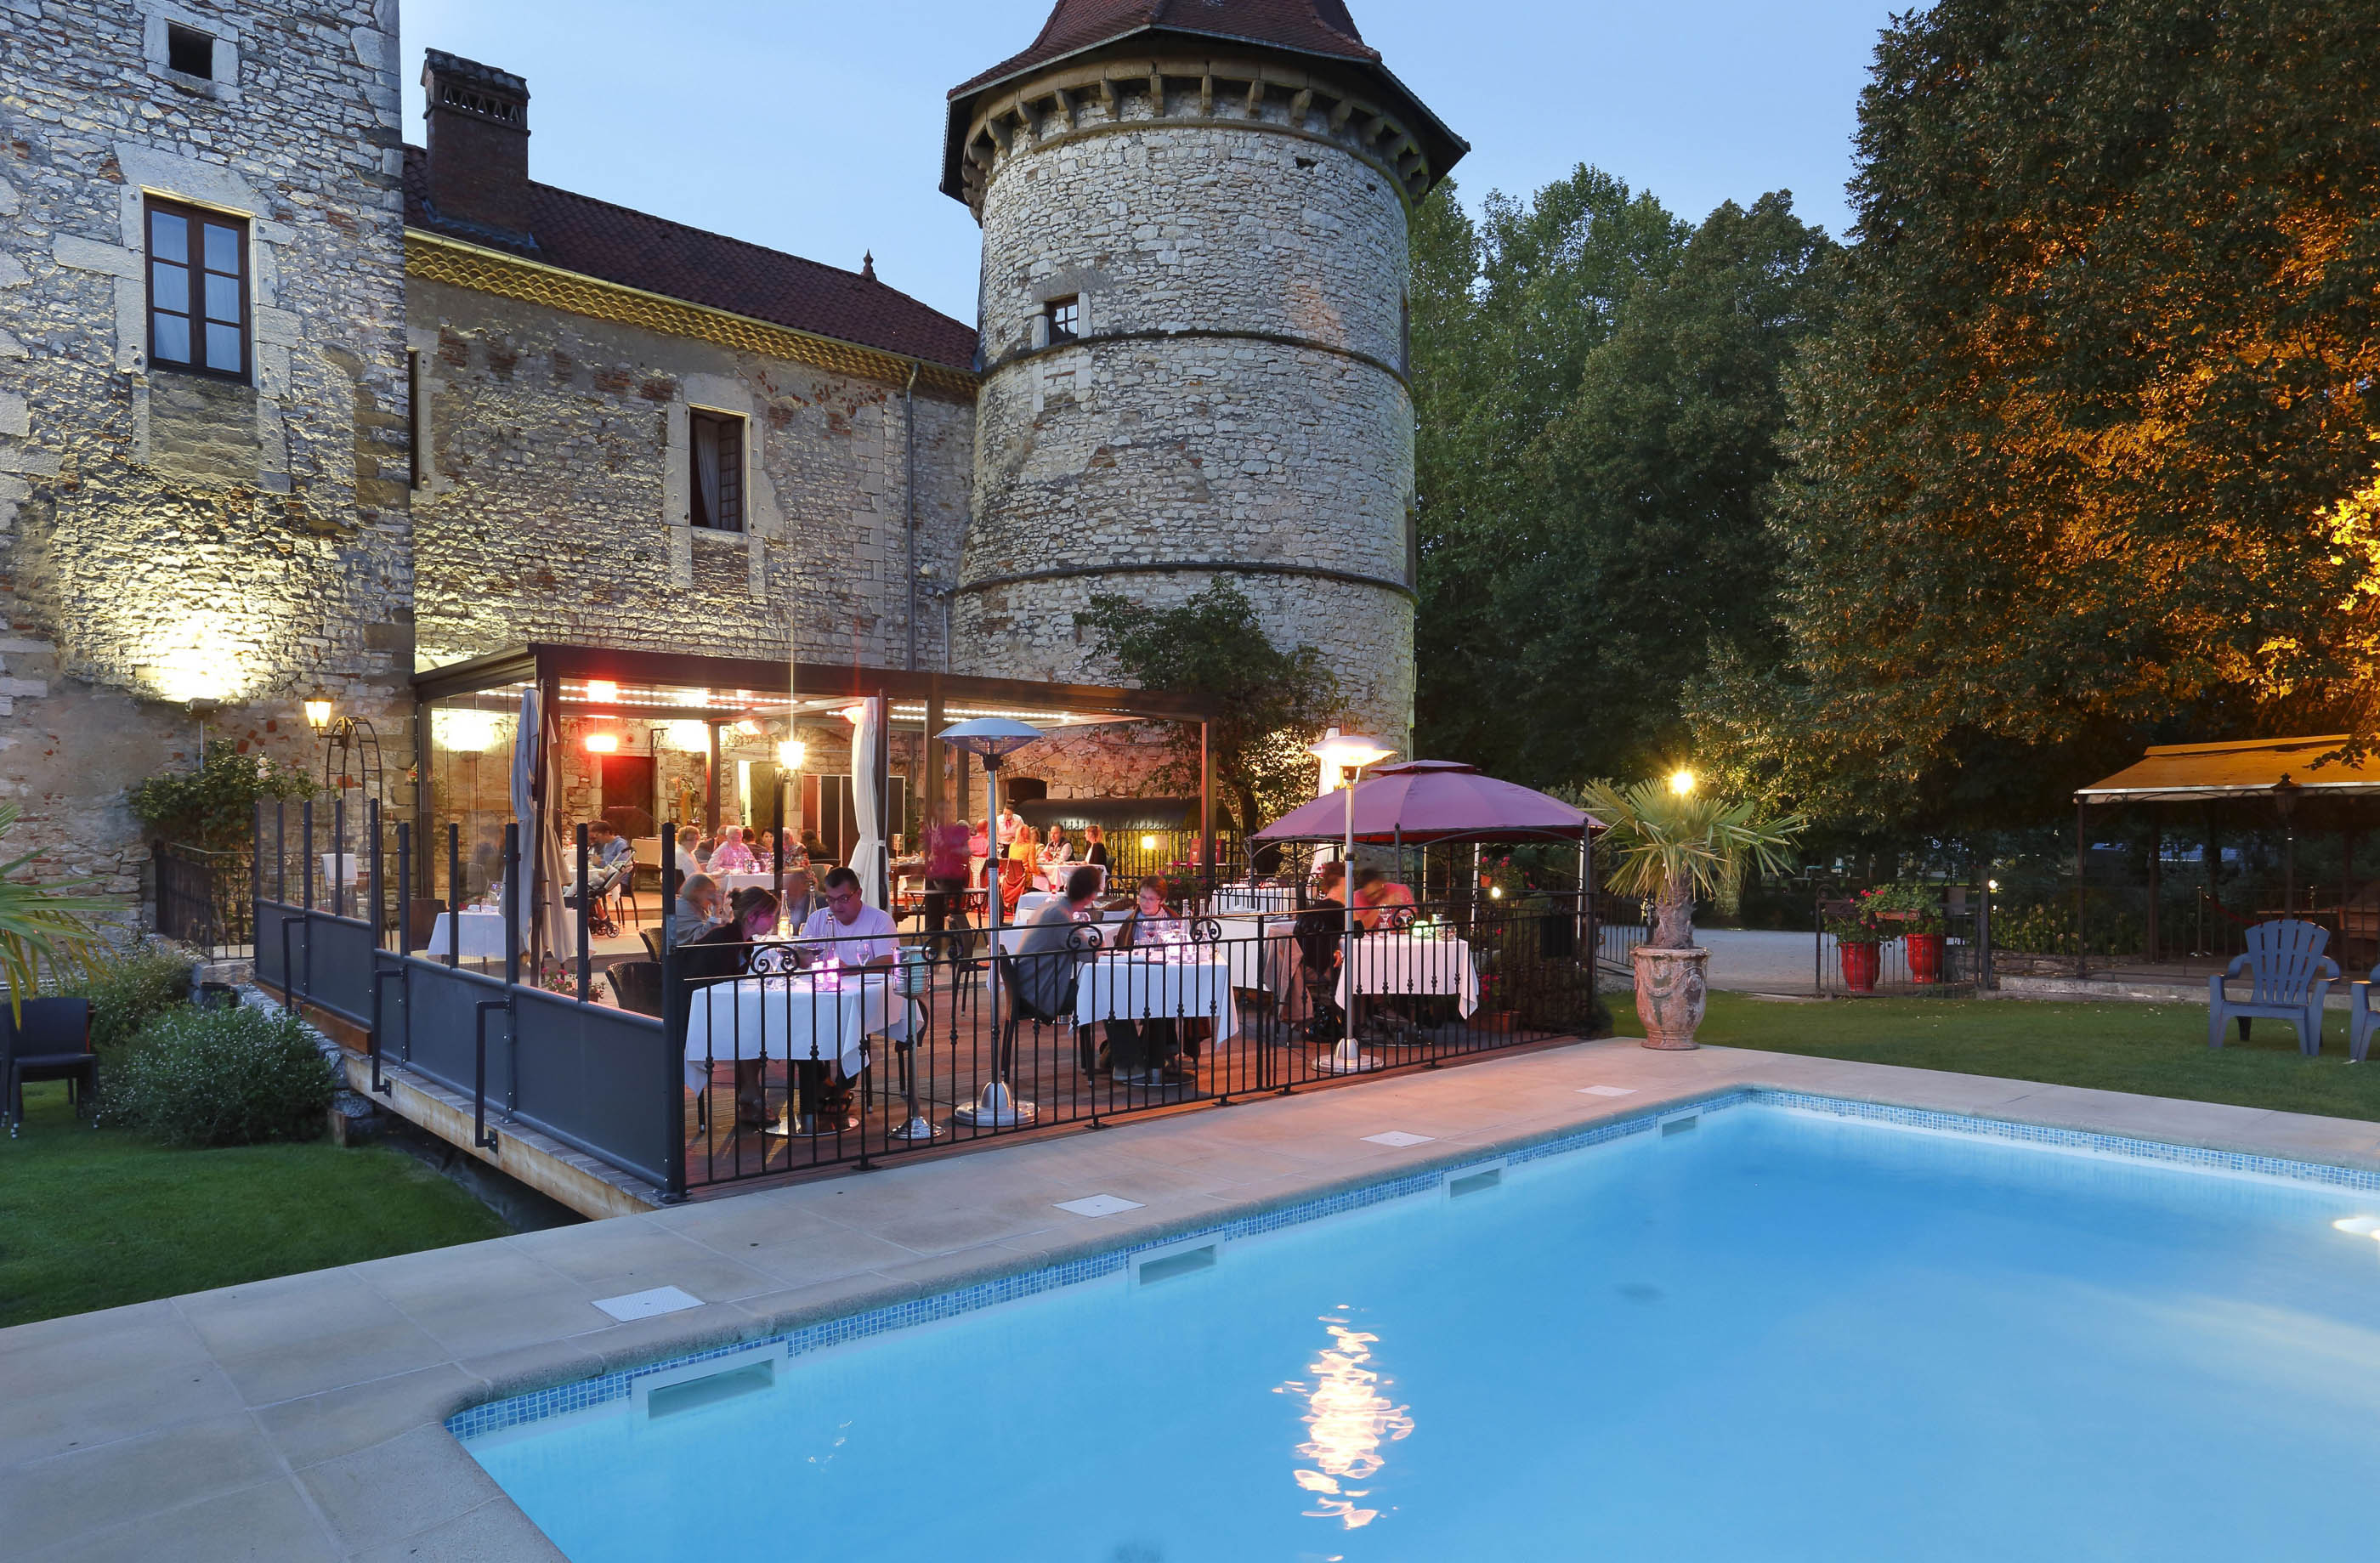 Swimming Pool of Summer Bistro, Terrace, Barbecue Château Chapeau Cornu 4 star Hotel in Vignieu, Isere, Rhône Alpes